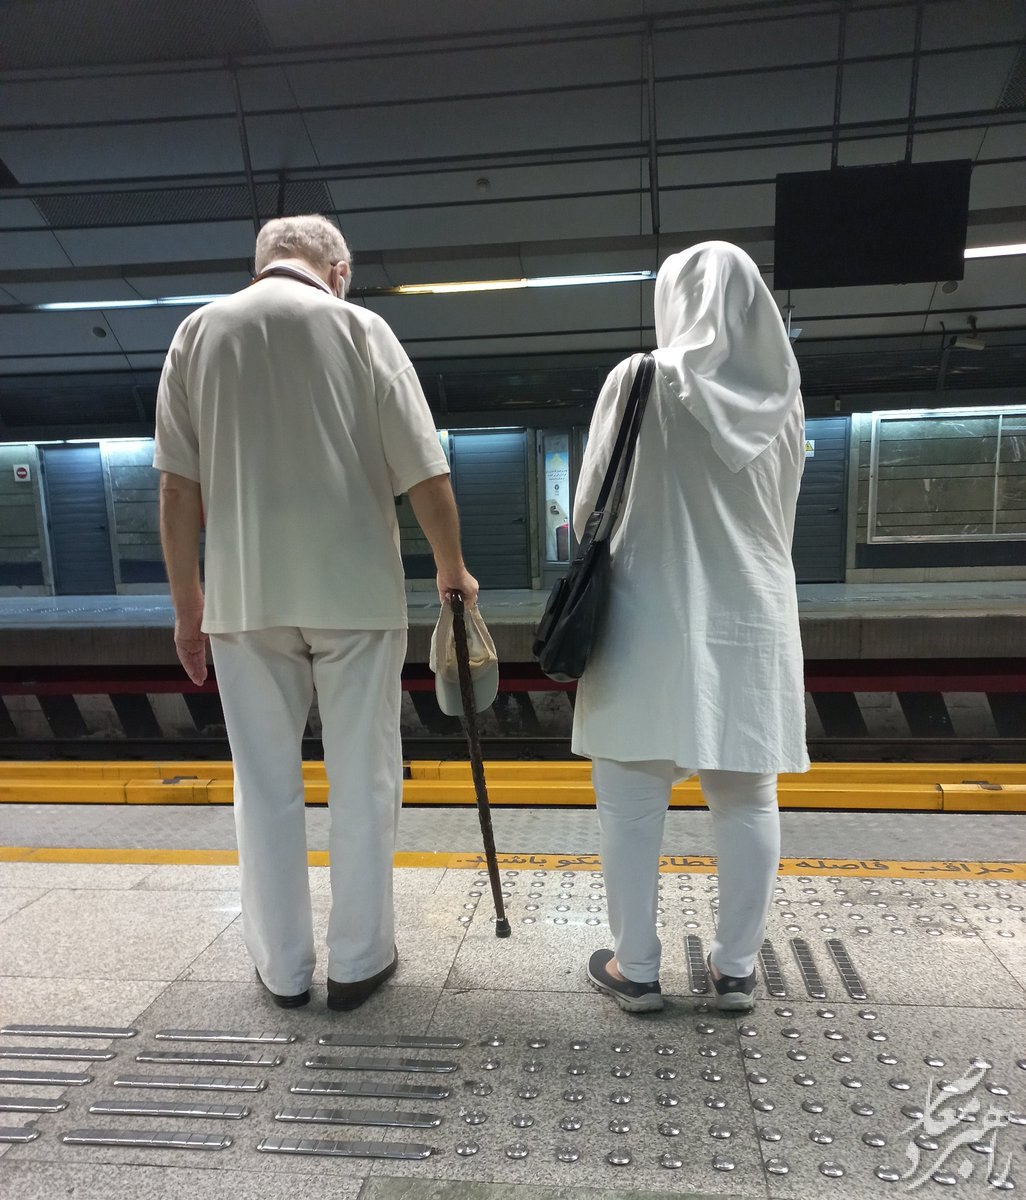 تصویری جالب از دو مسافر خاص متروی تهران